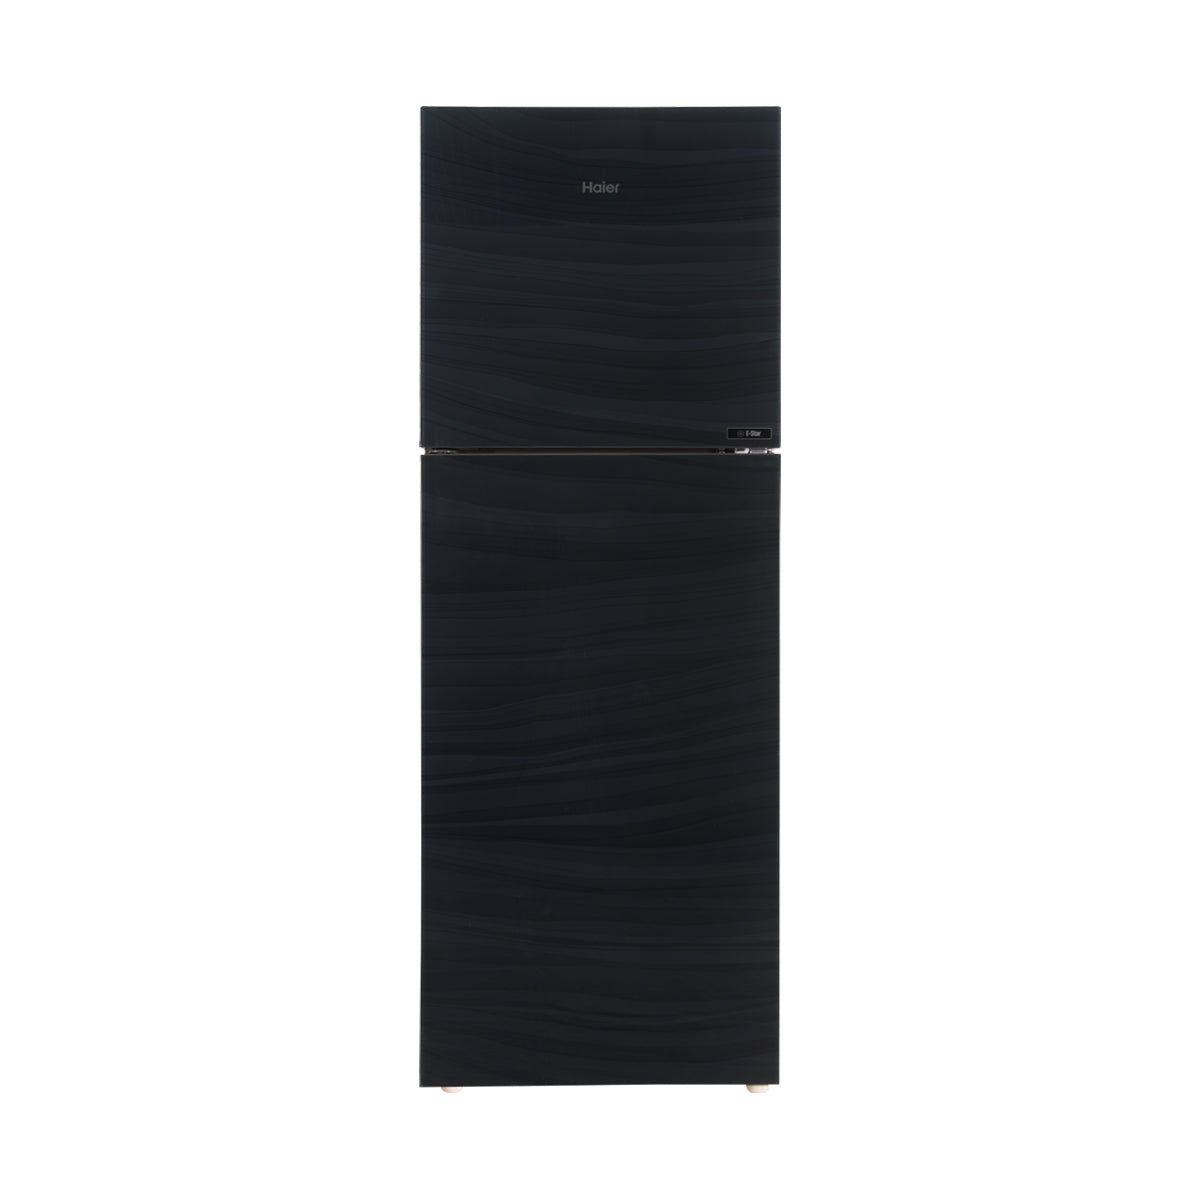 Haier Refrigerator Double Door - HRF-438 EPR/EPB/EPC (Glass Door)